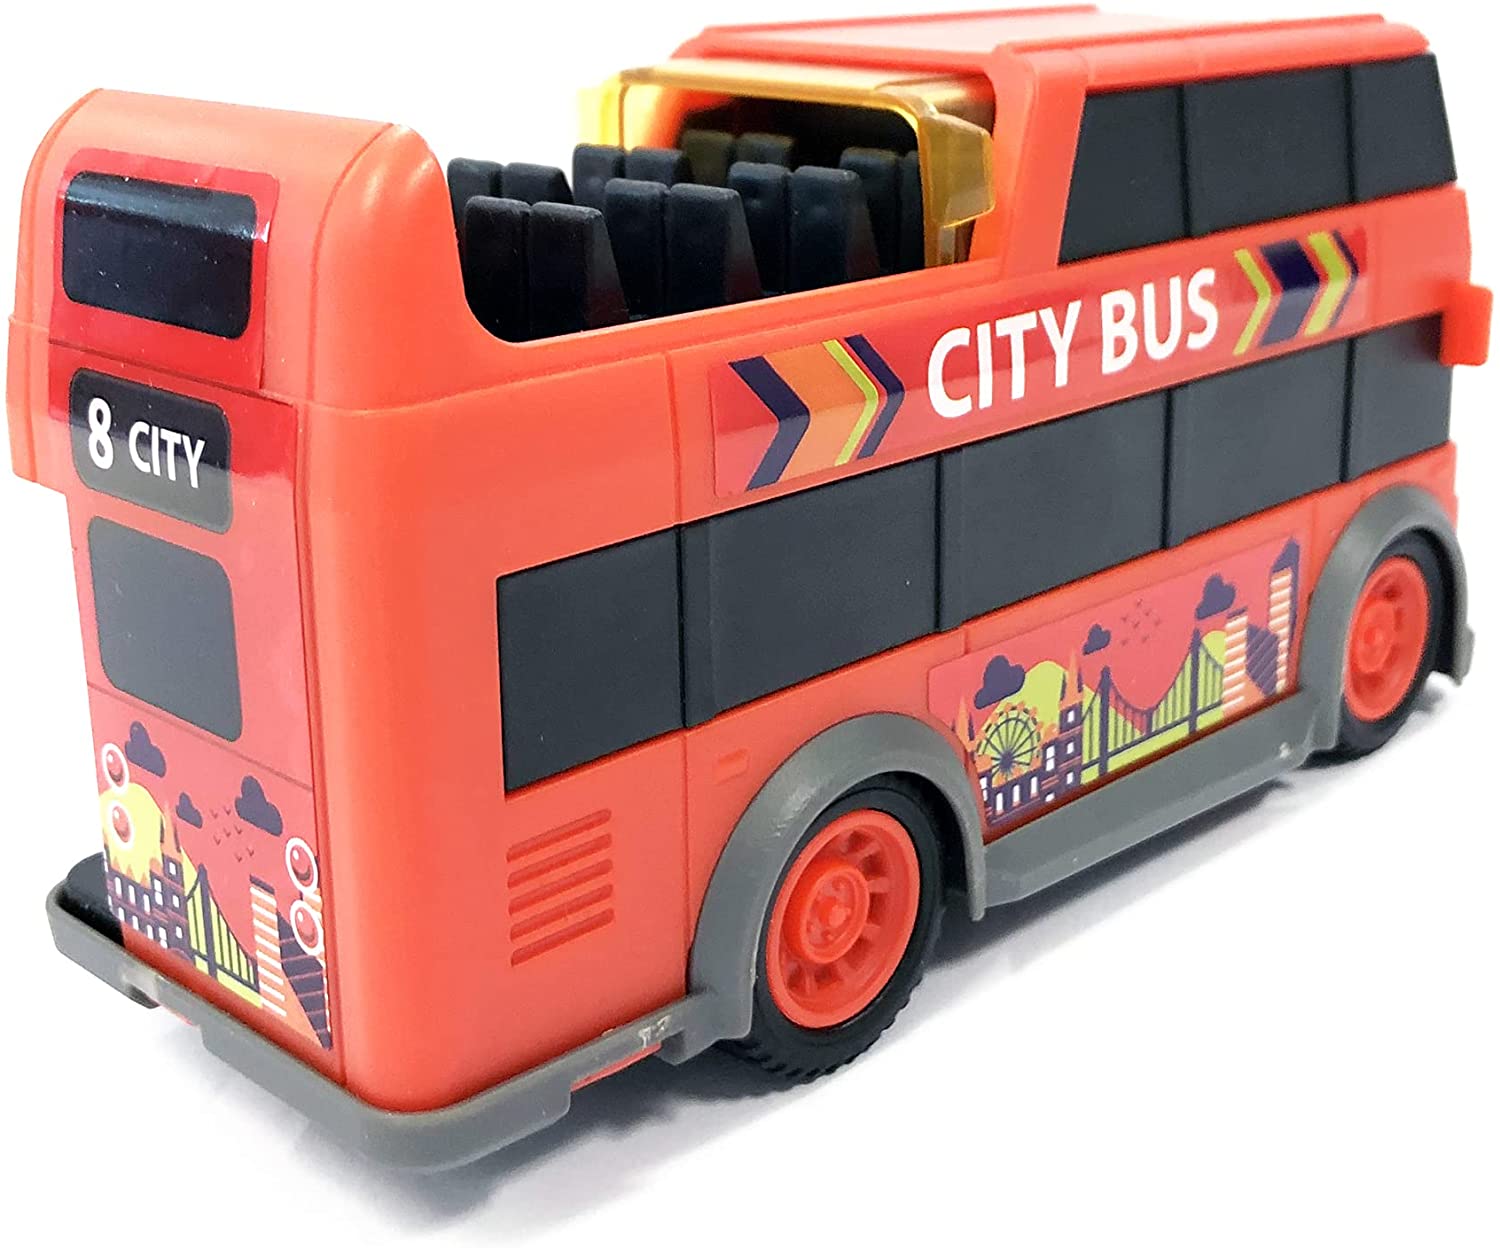 Masina - City Bus, 15 cm | Dickie Toys - 4